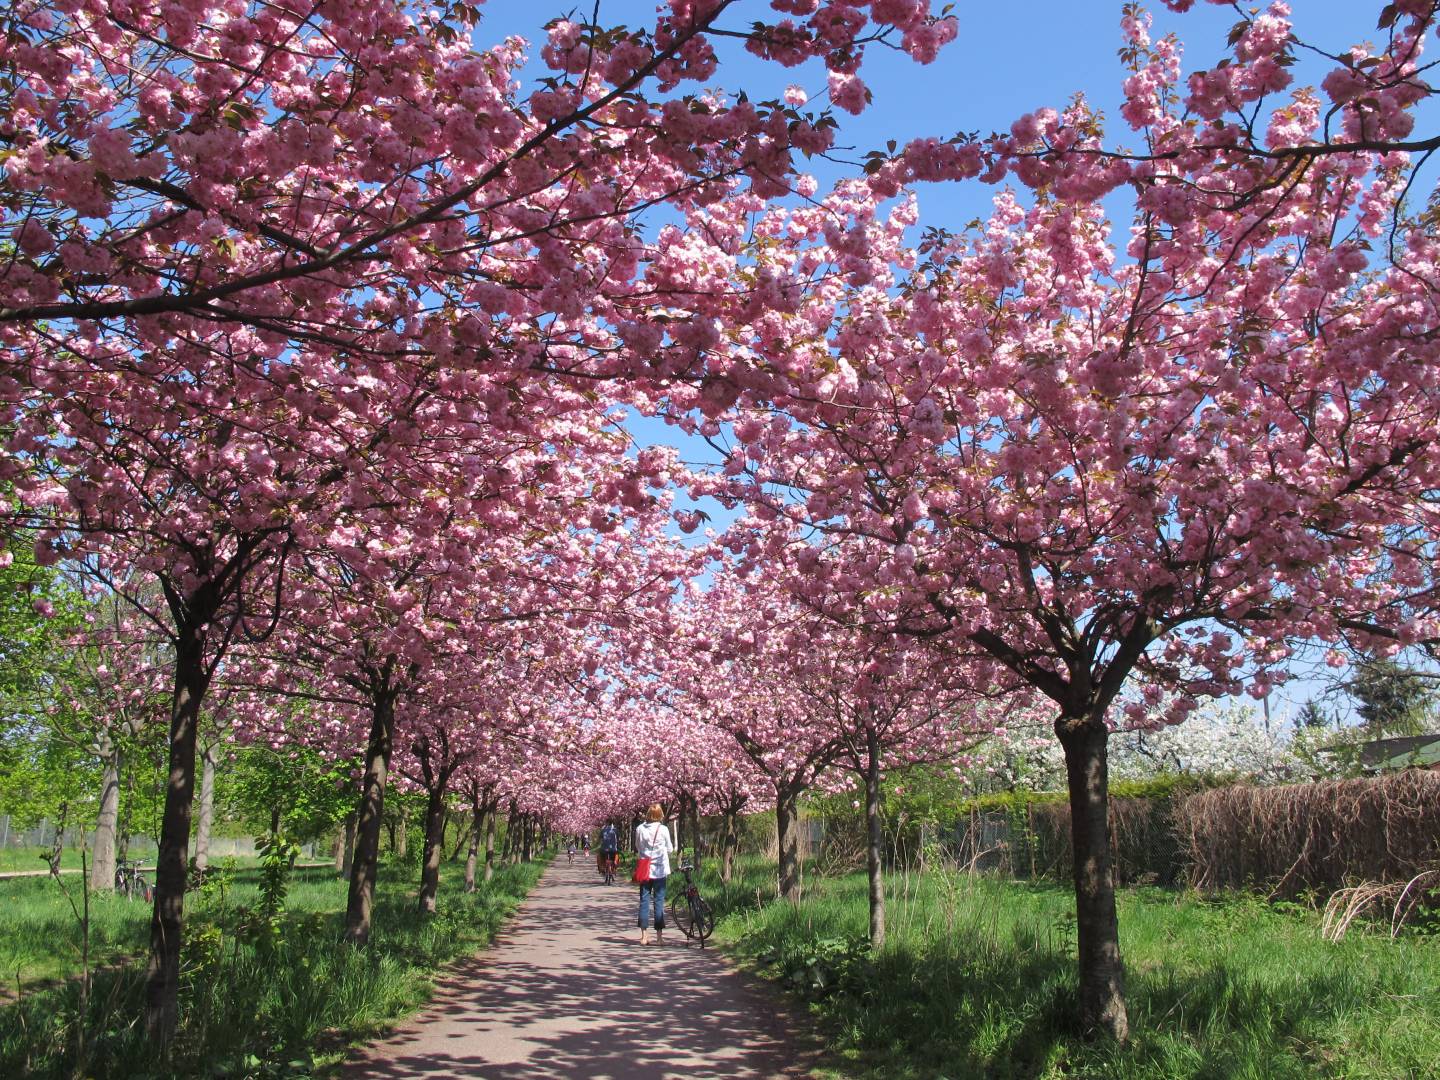 Kirschblüte in deutschen Städten: Die 10 schönsten Hanami-Spots in ...